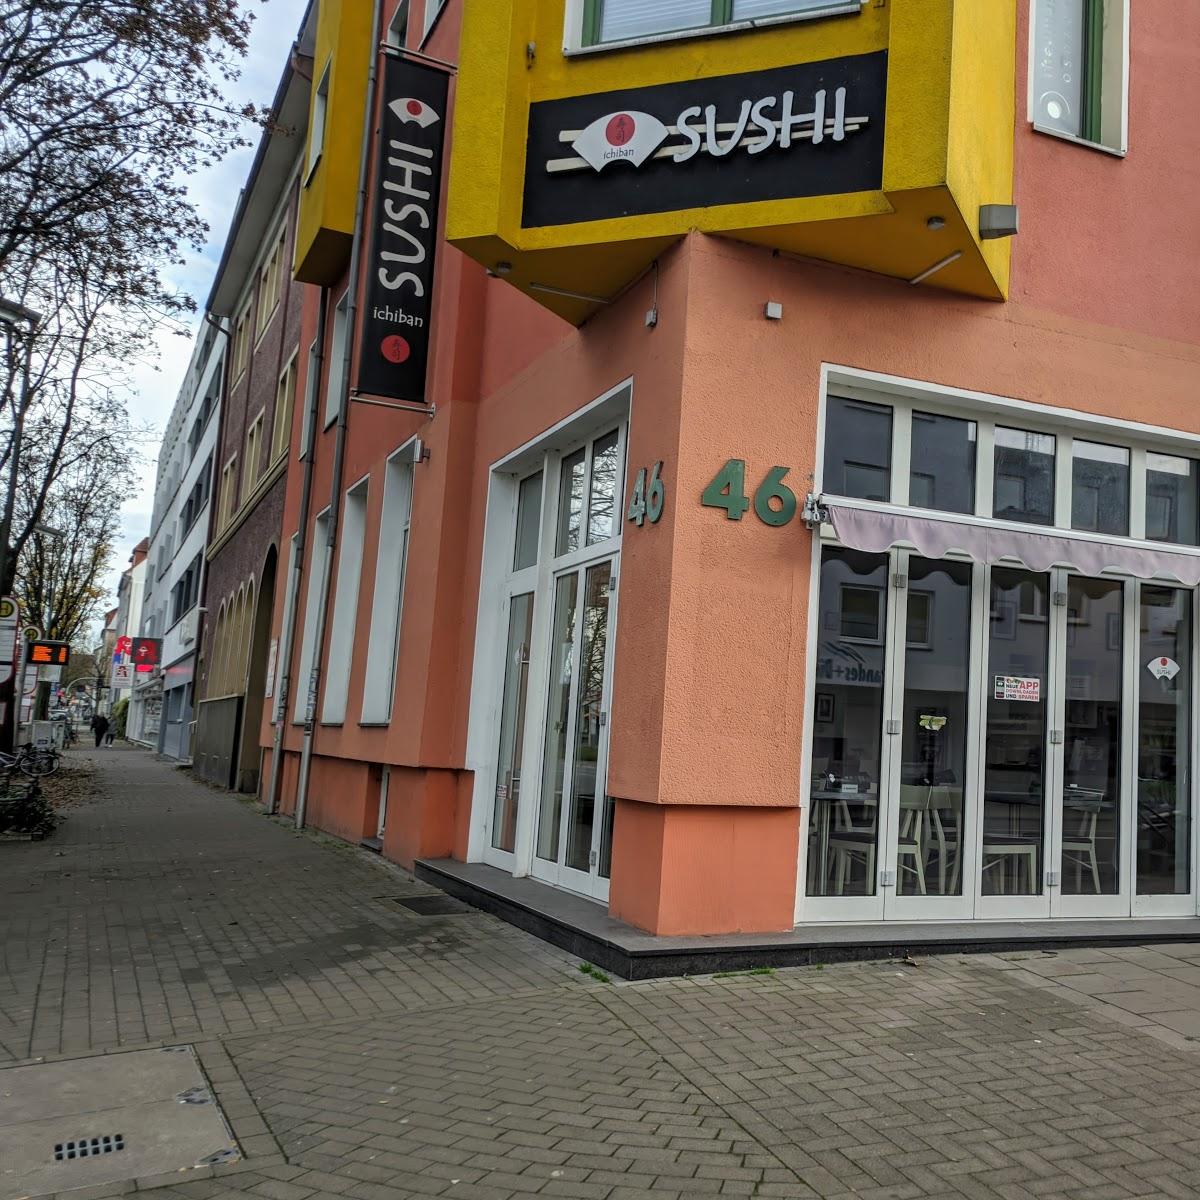 Restaurant "Ichiban Sushi" in Osnabrück